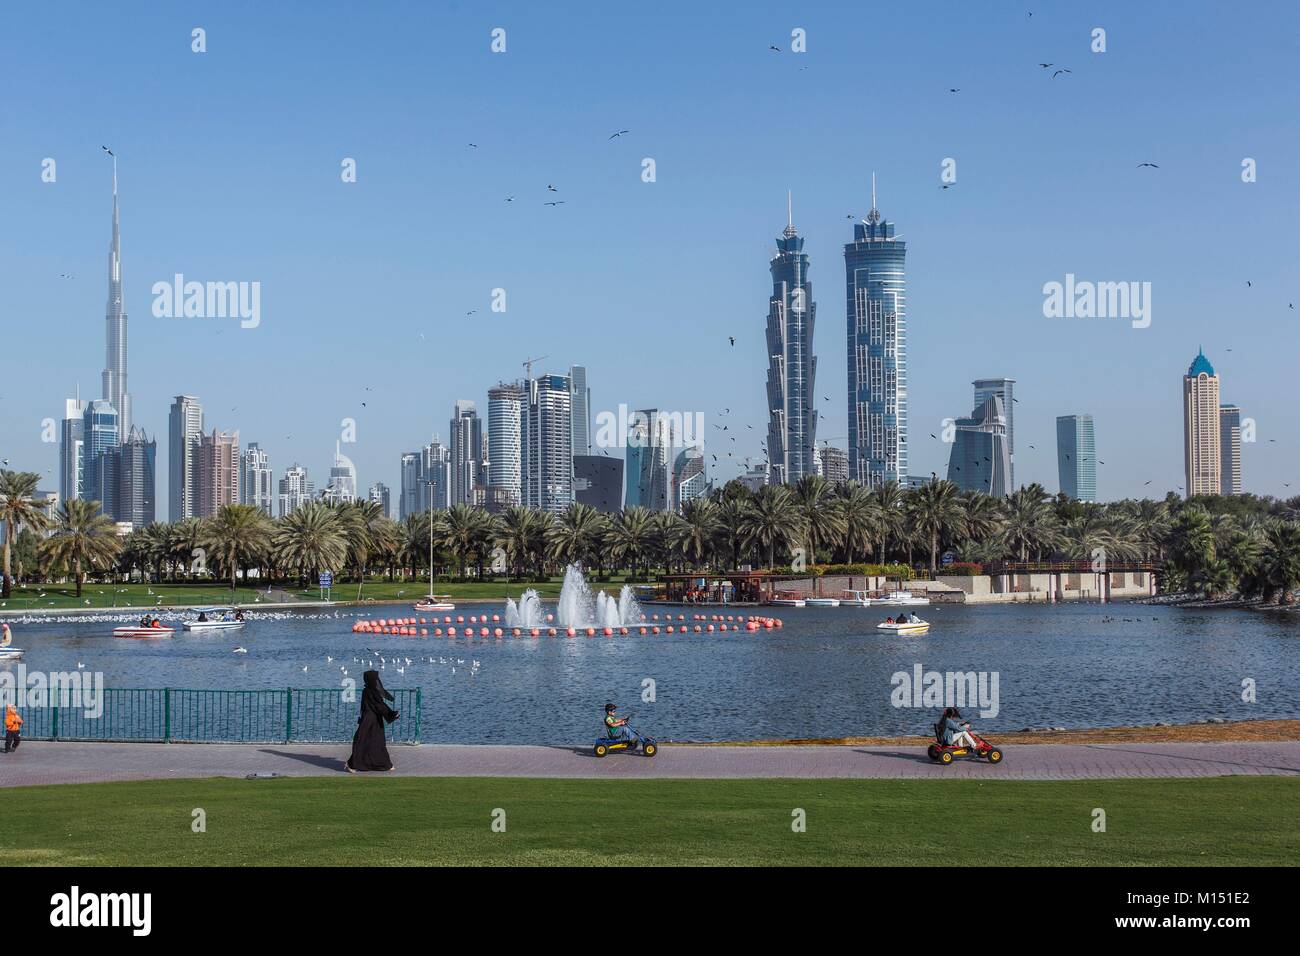 Emirats arabes unis, dubaï, Business Bay area avec Burj Khalifa sur le côté gauche, avec Safa Park au premier plan Banque D'Images